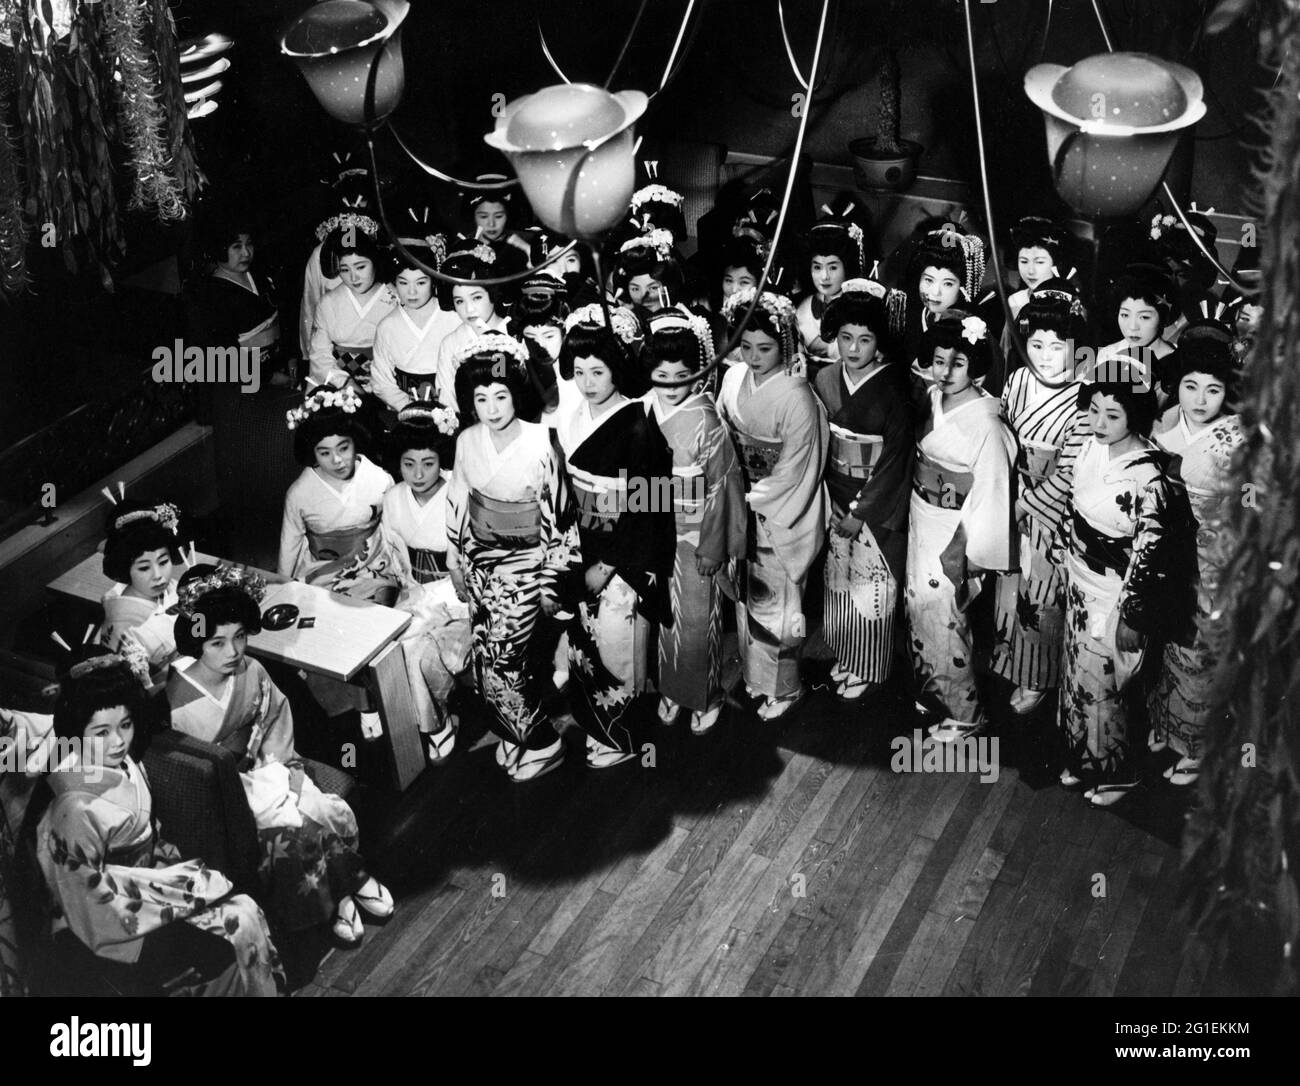 Geografia / viaggio, Giappone, persone, donne, geisha, Foto di gruppo con geishe, lunghezza intera, anni '50, INFORMAZIONI-DIRITTI-AGGIUNTIVI-DI-CLEARANCE-NON-DISPONIBILI Foto Stock